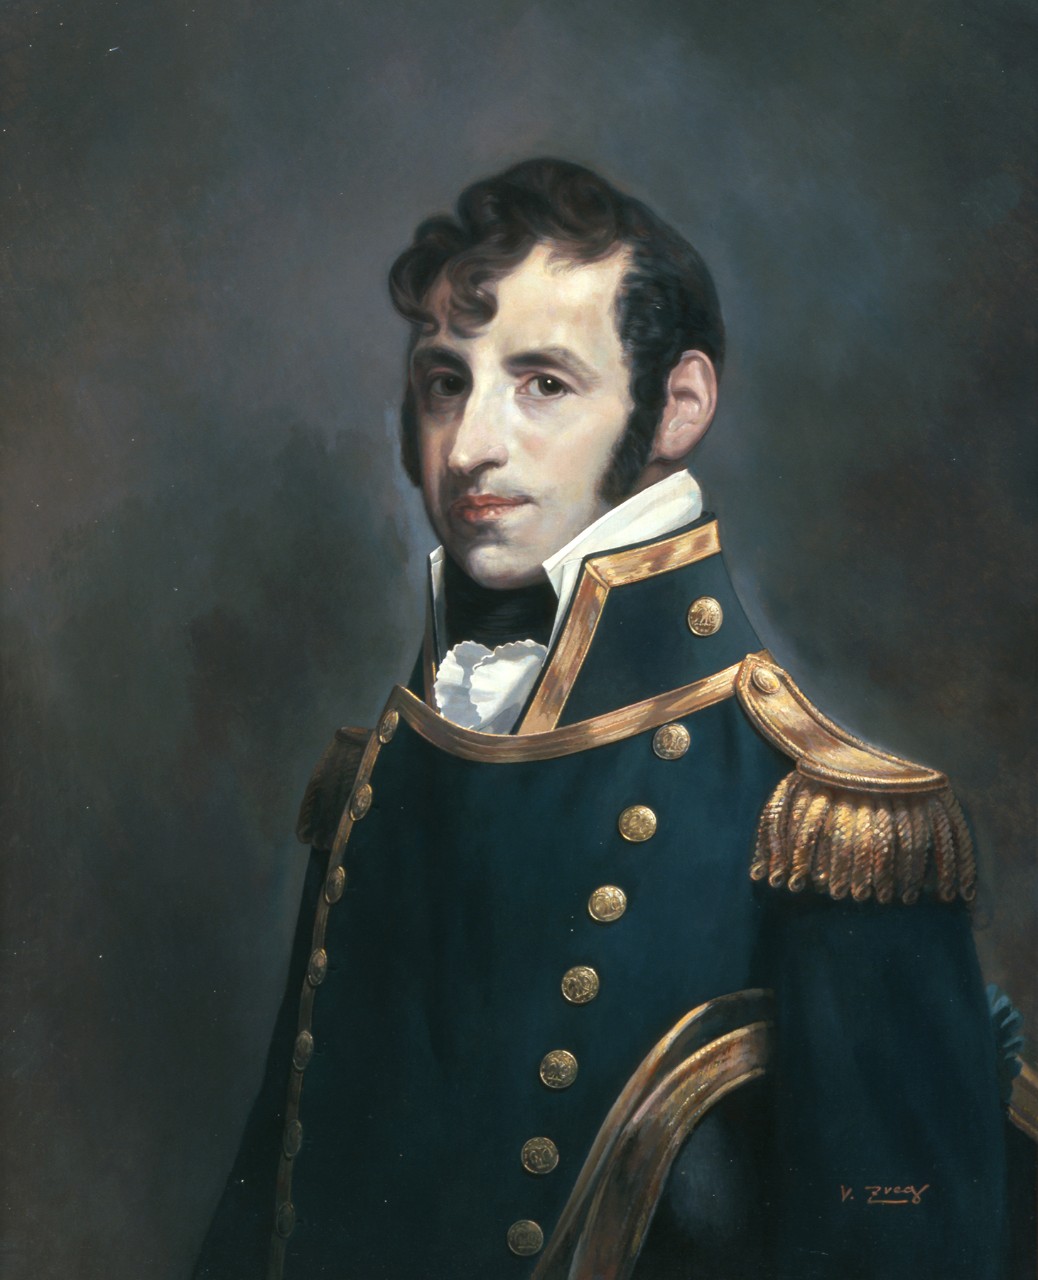 Portrait of Stephen Decatur with a dark background